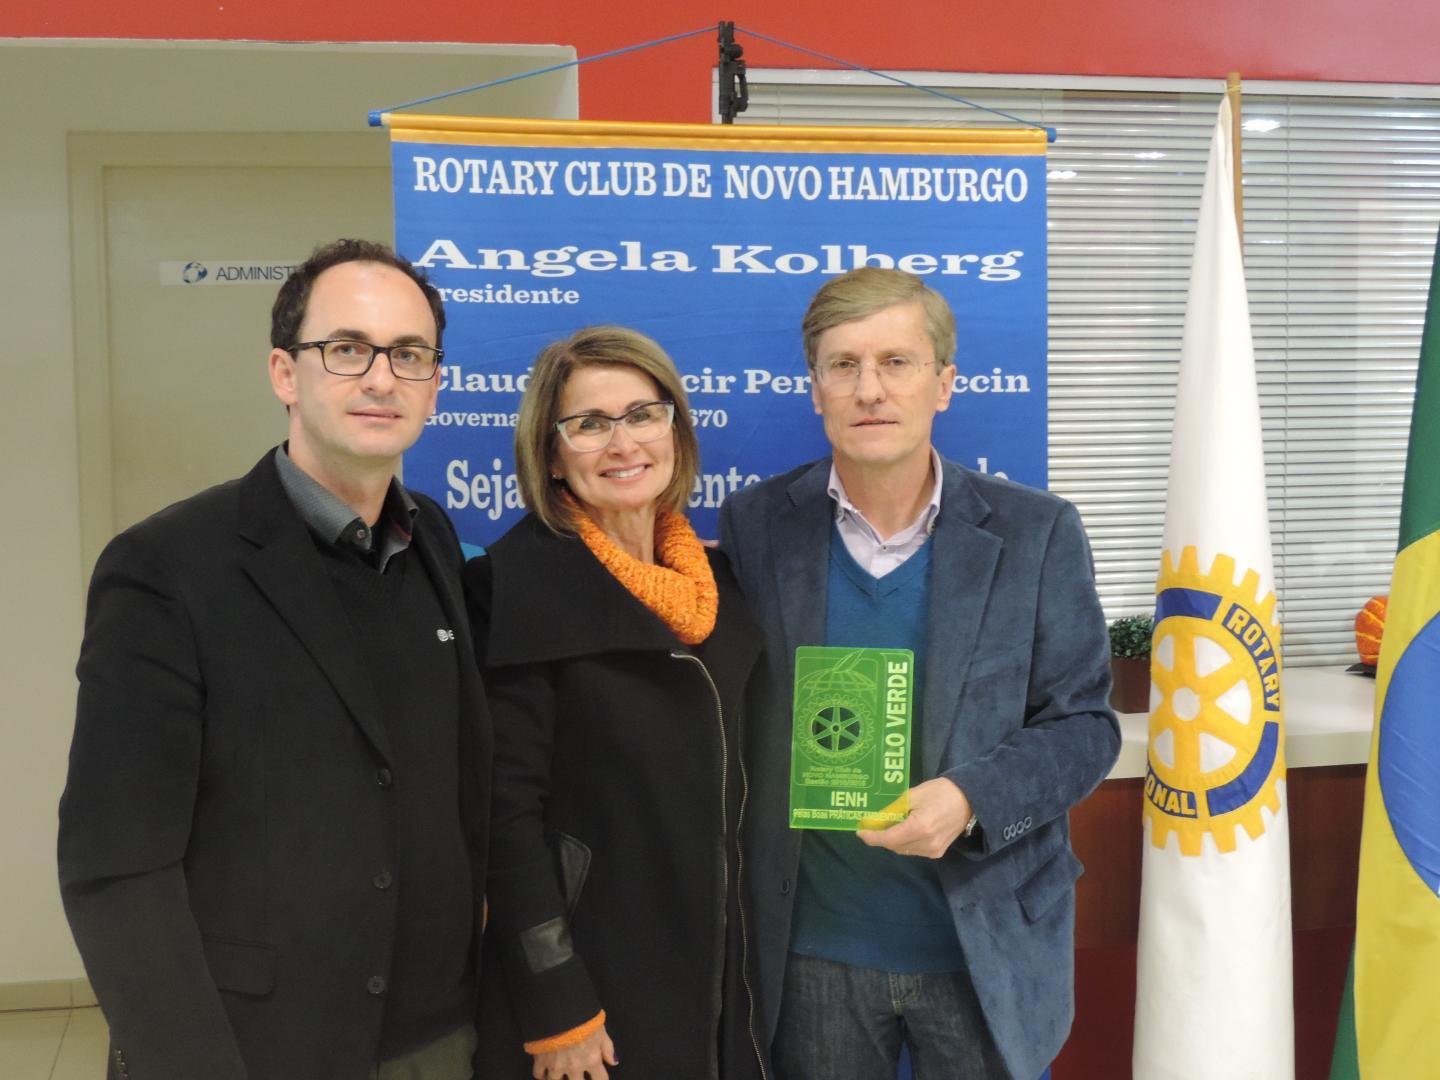 IENH recebe Selo Verde do Rotary Club pelas boas práticas ambientais